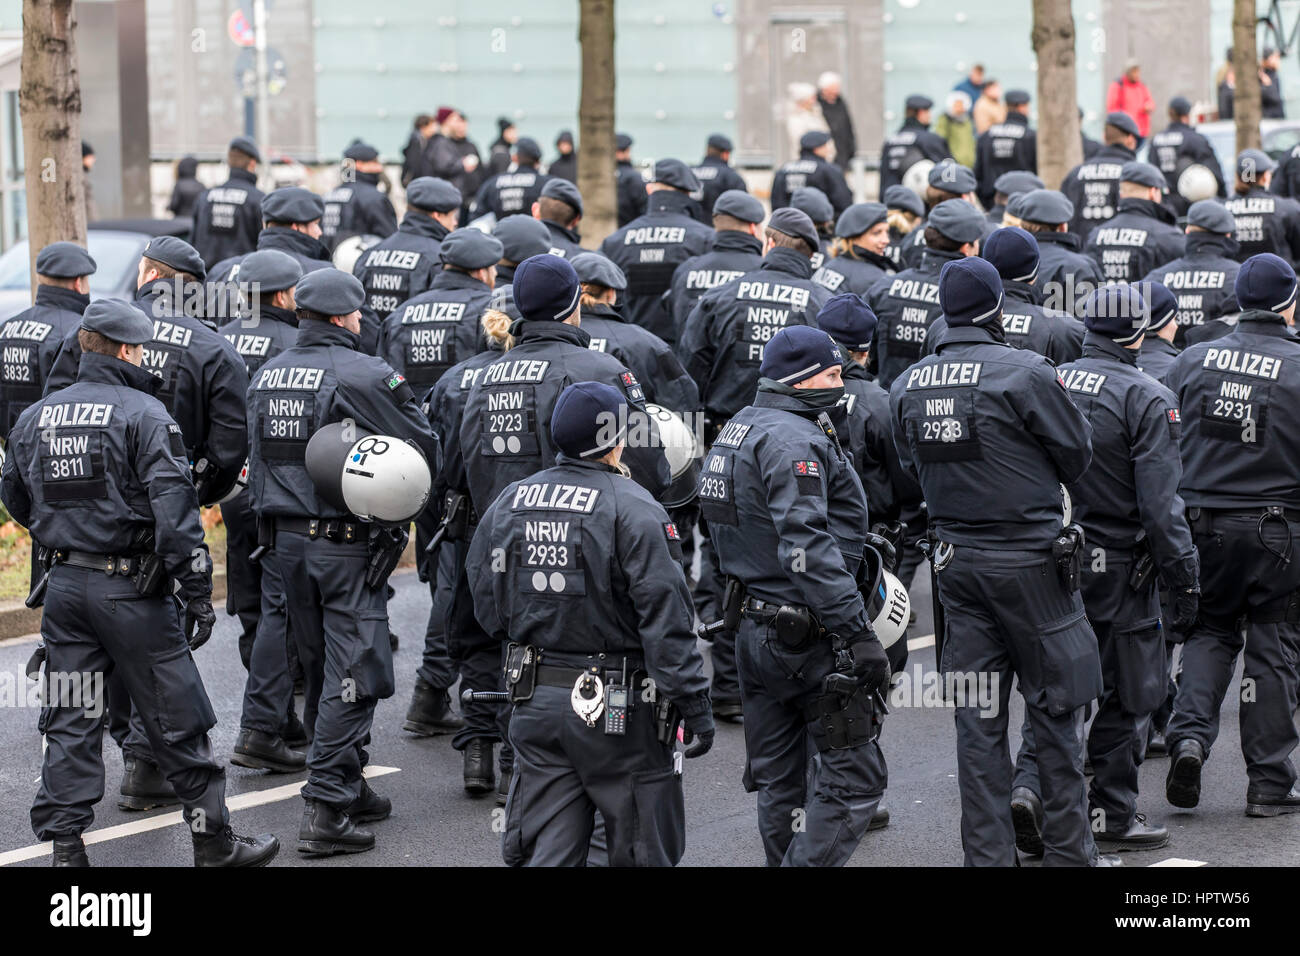 Alemán de la unidad de la policía antidisturbios durante una manifestación en Dortmund, Alemania, Foto de stock